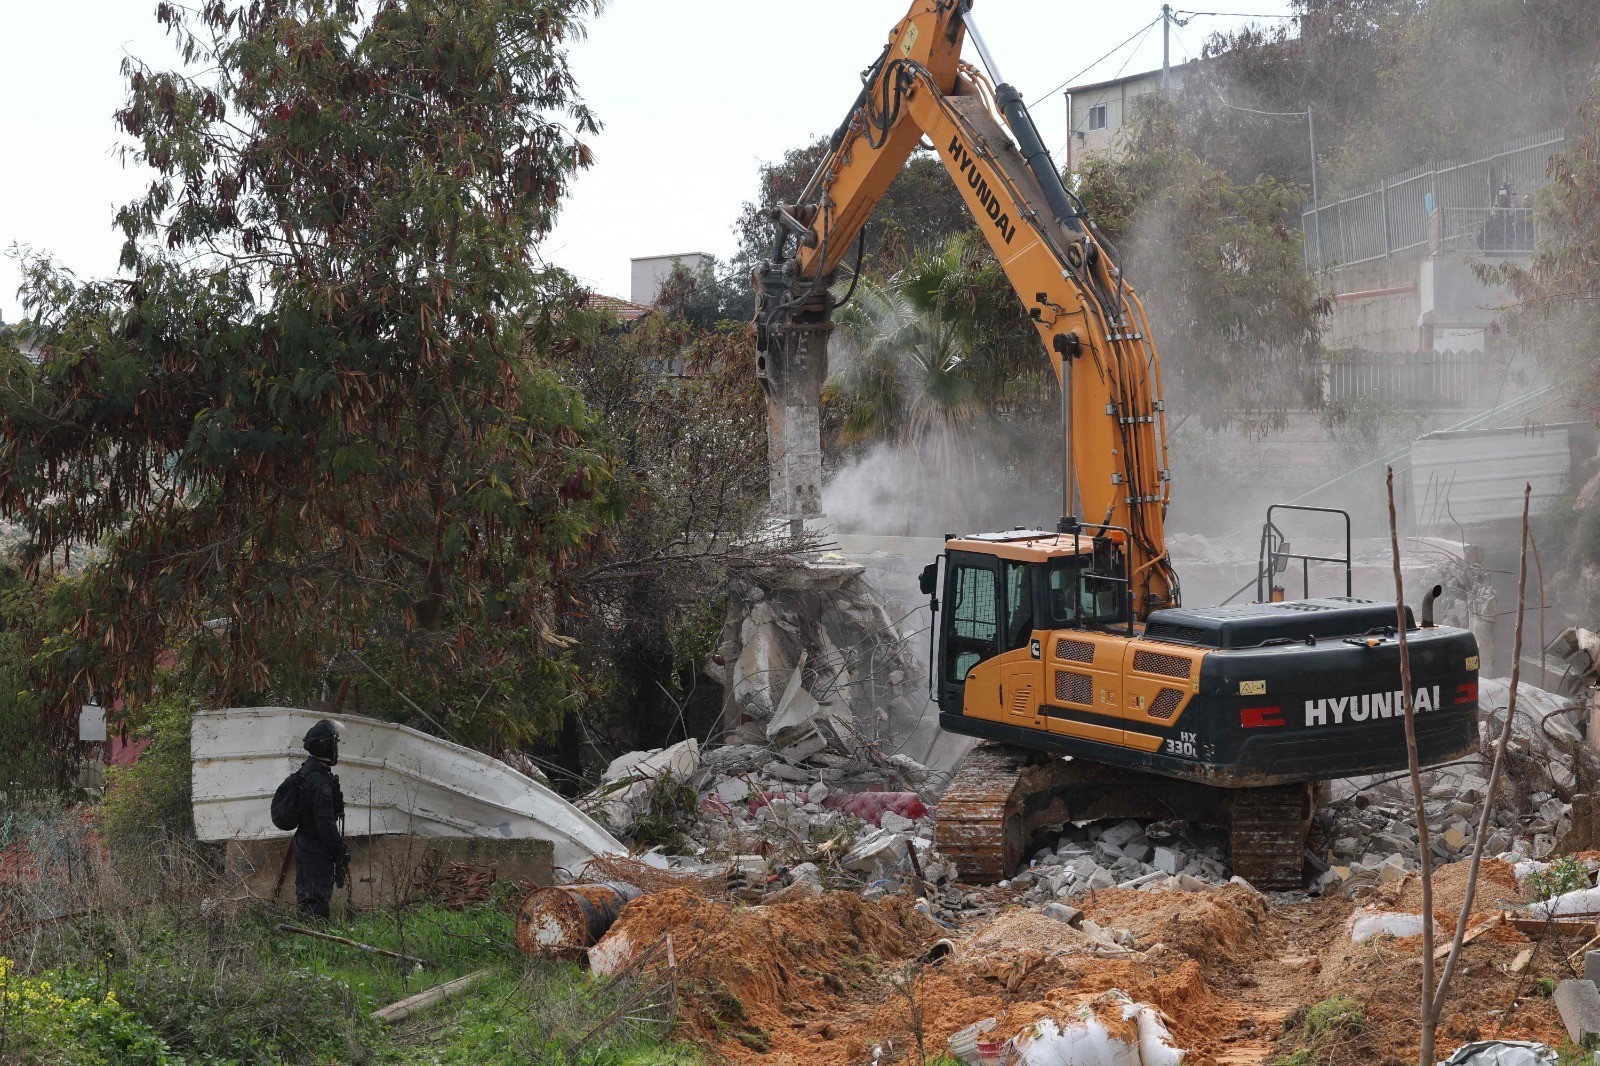 Zionistischer Feind zerstört ein Haus nordwestlich von Ramallah